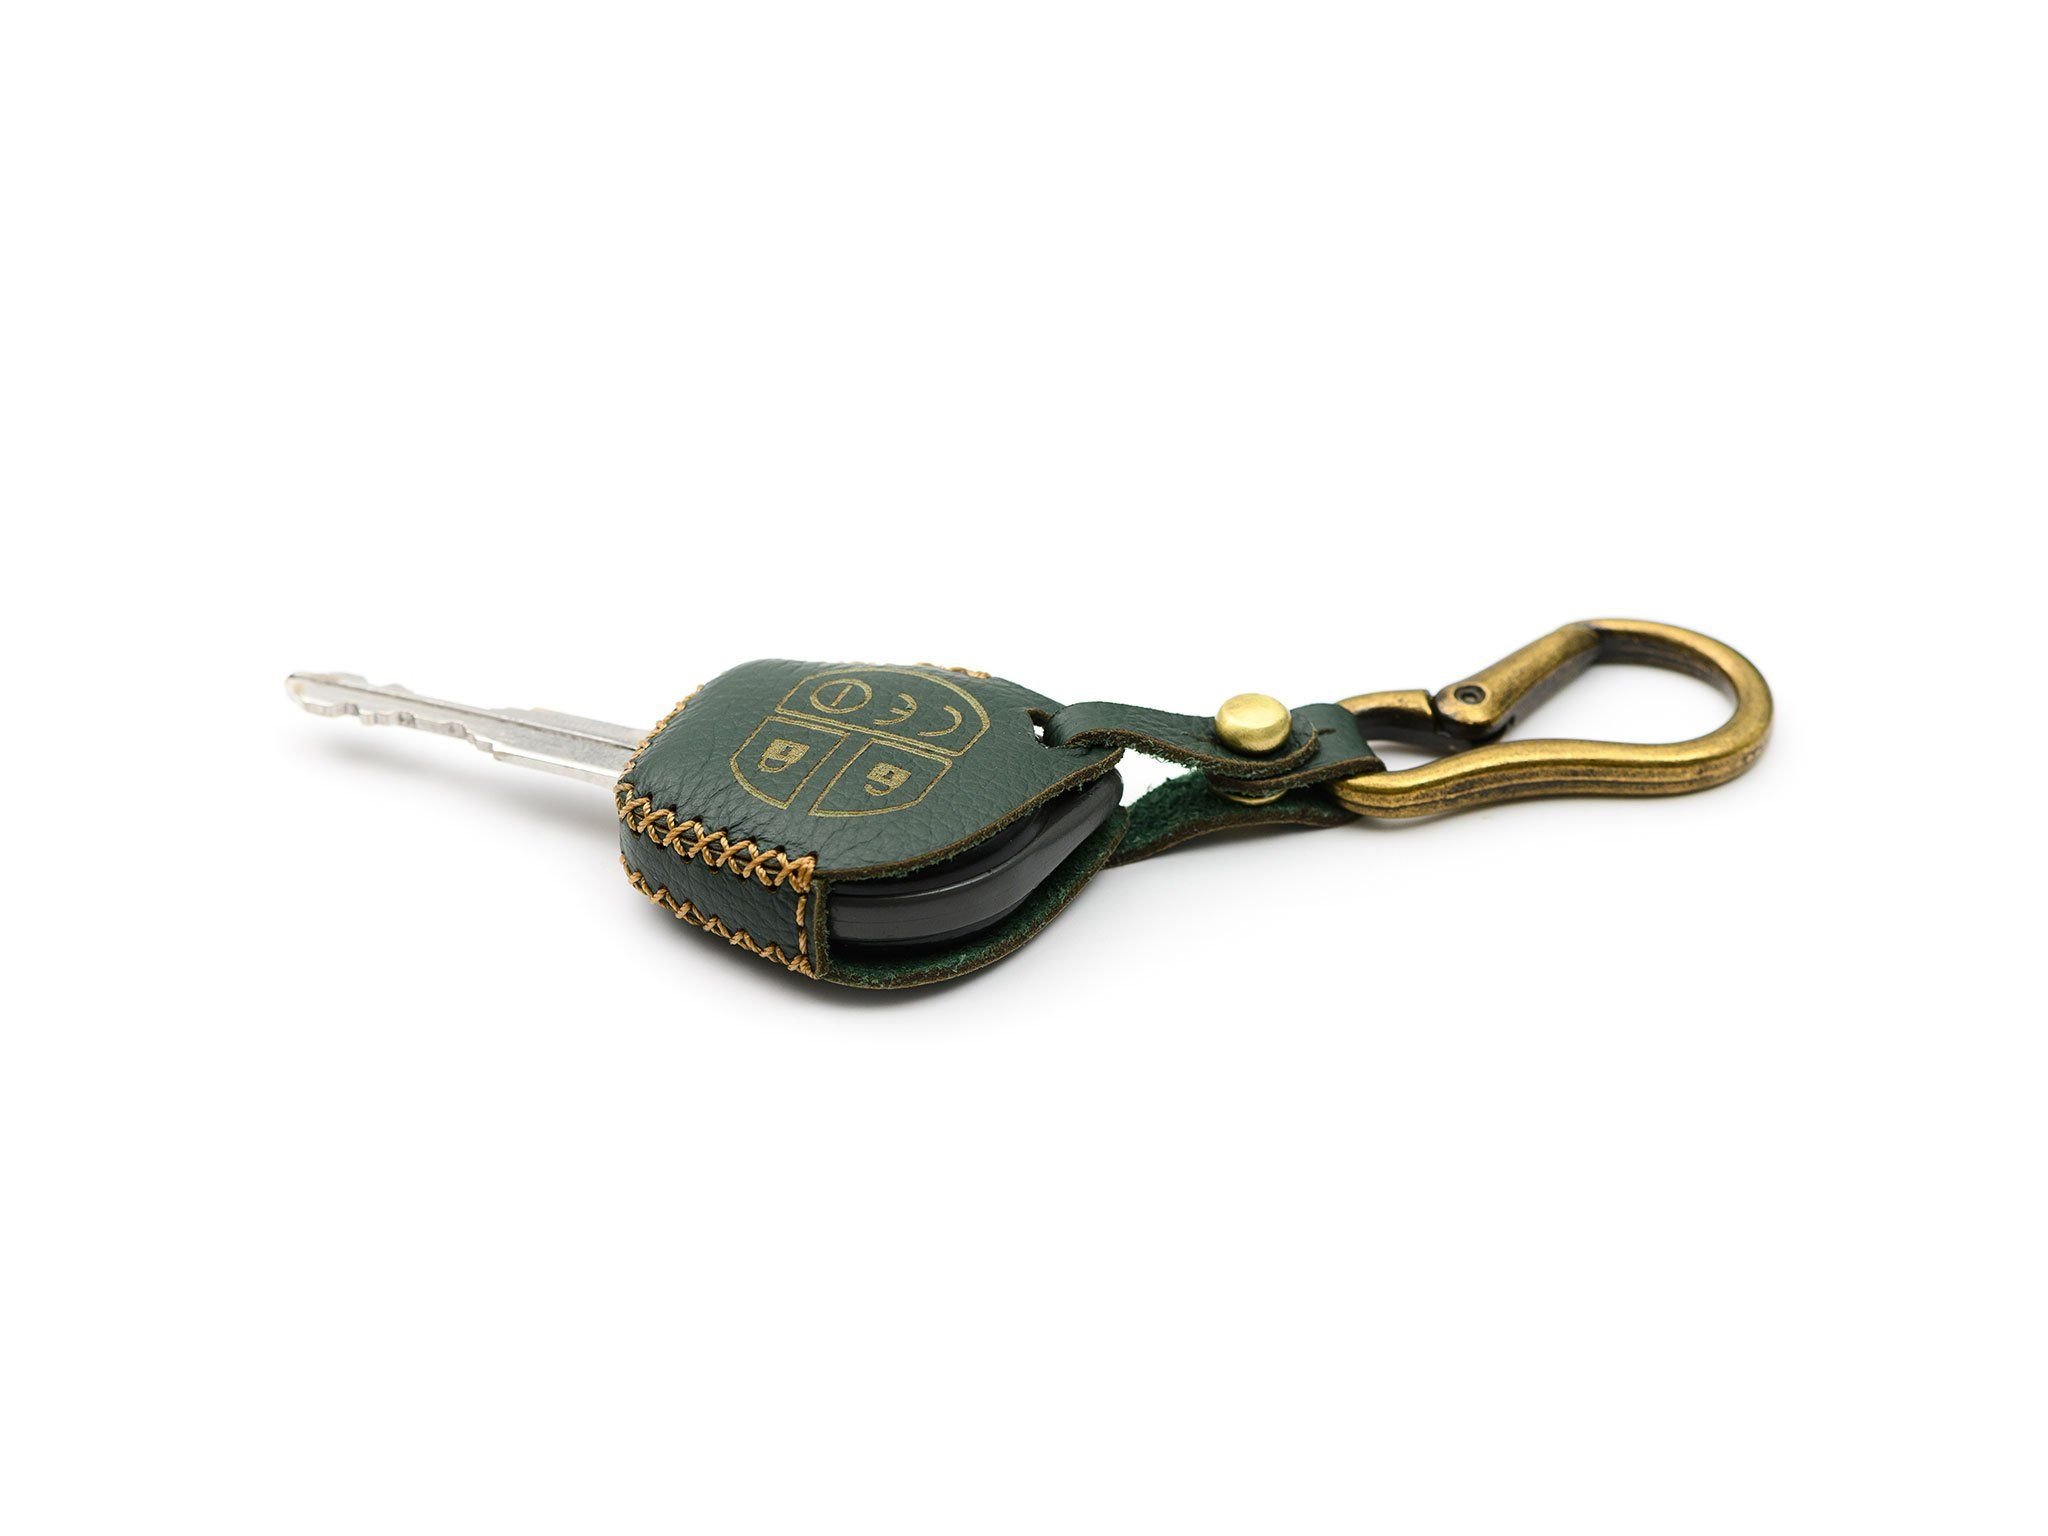  Suzuki Ertiga - Bao da chìa khóa (móc carabiner) 